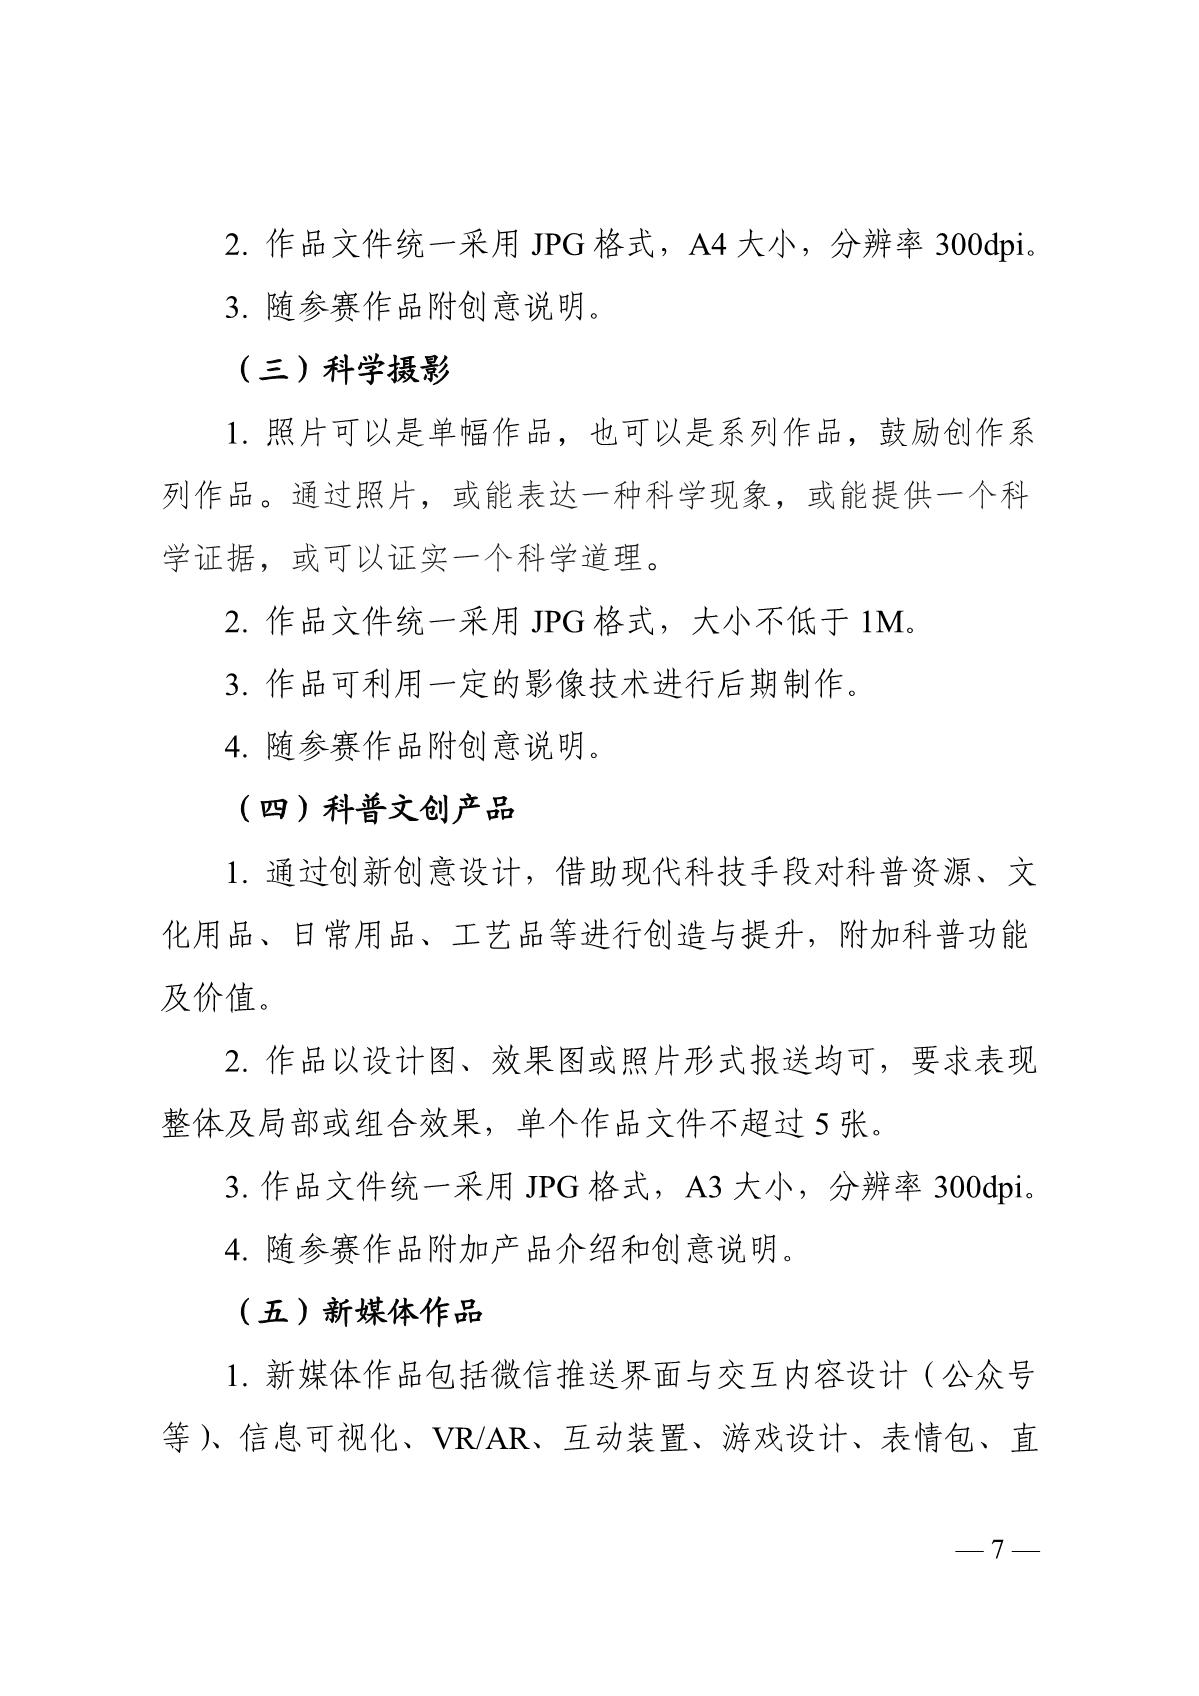 关于组织开展第六届江苏省科普公益作品大赛的通知（苏科协发〔2020〕46号）(1)_7.JPG